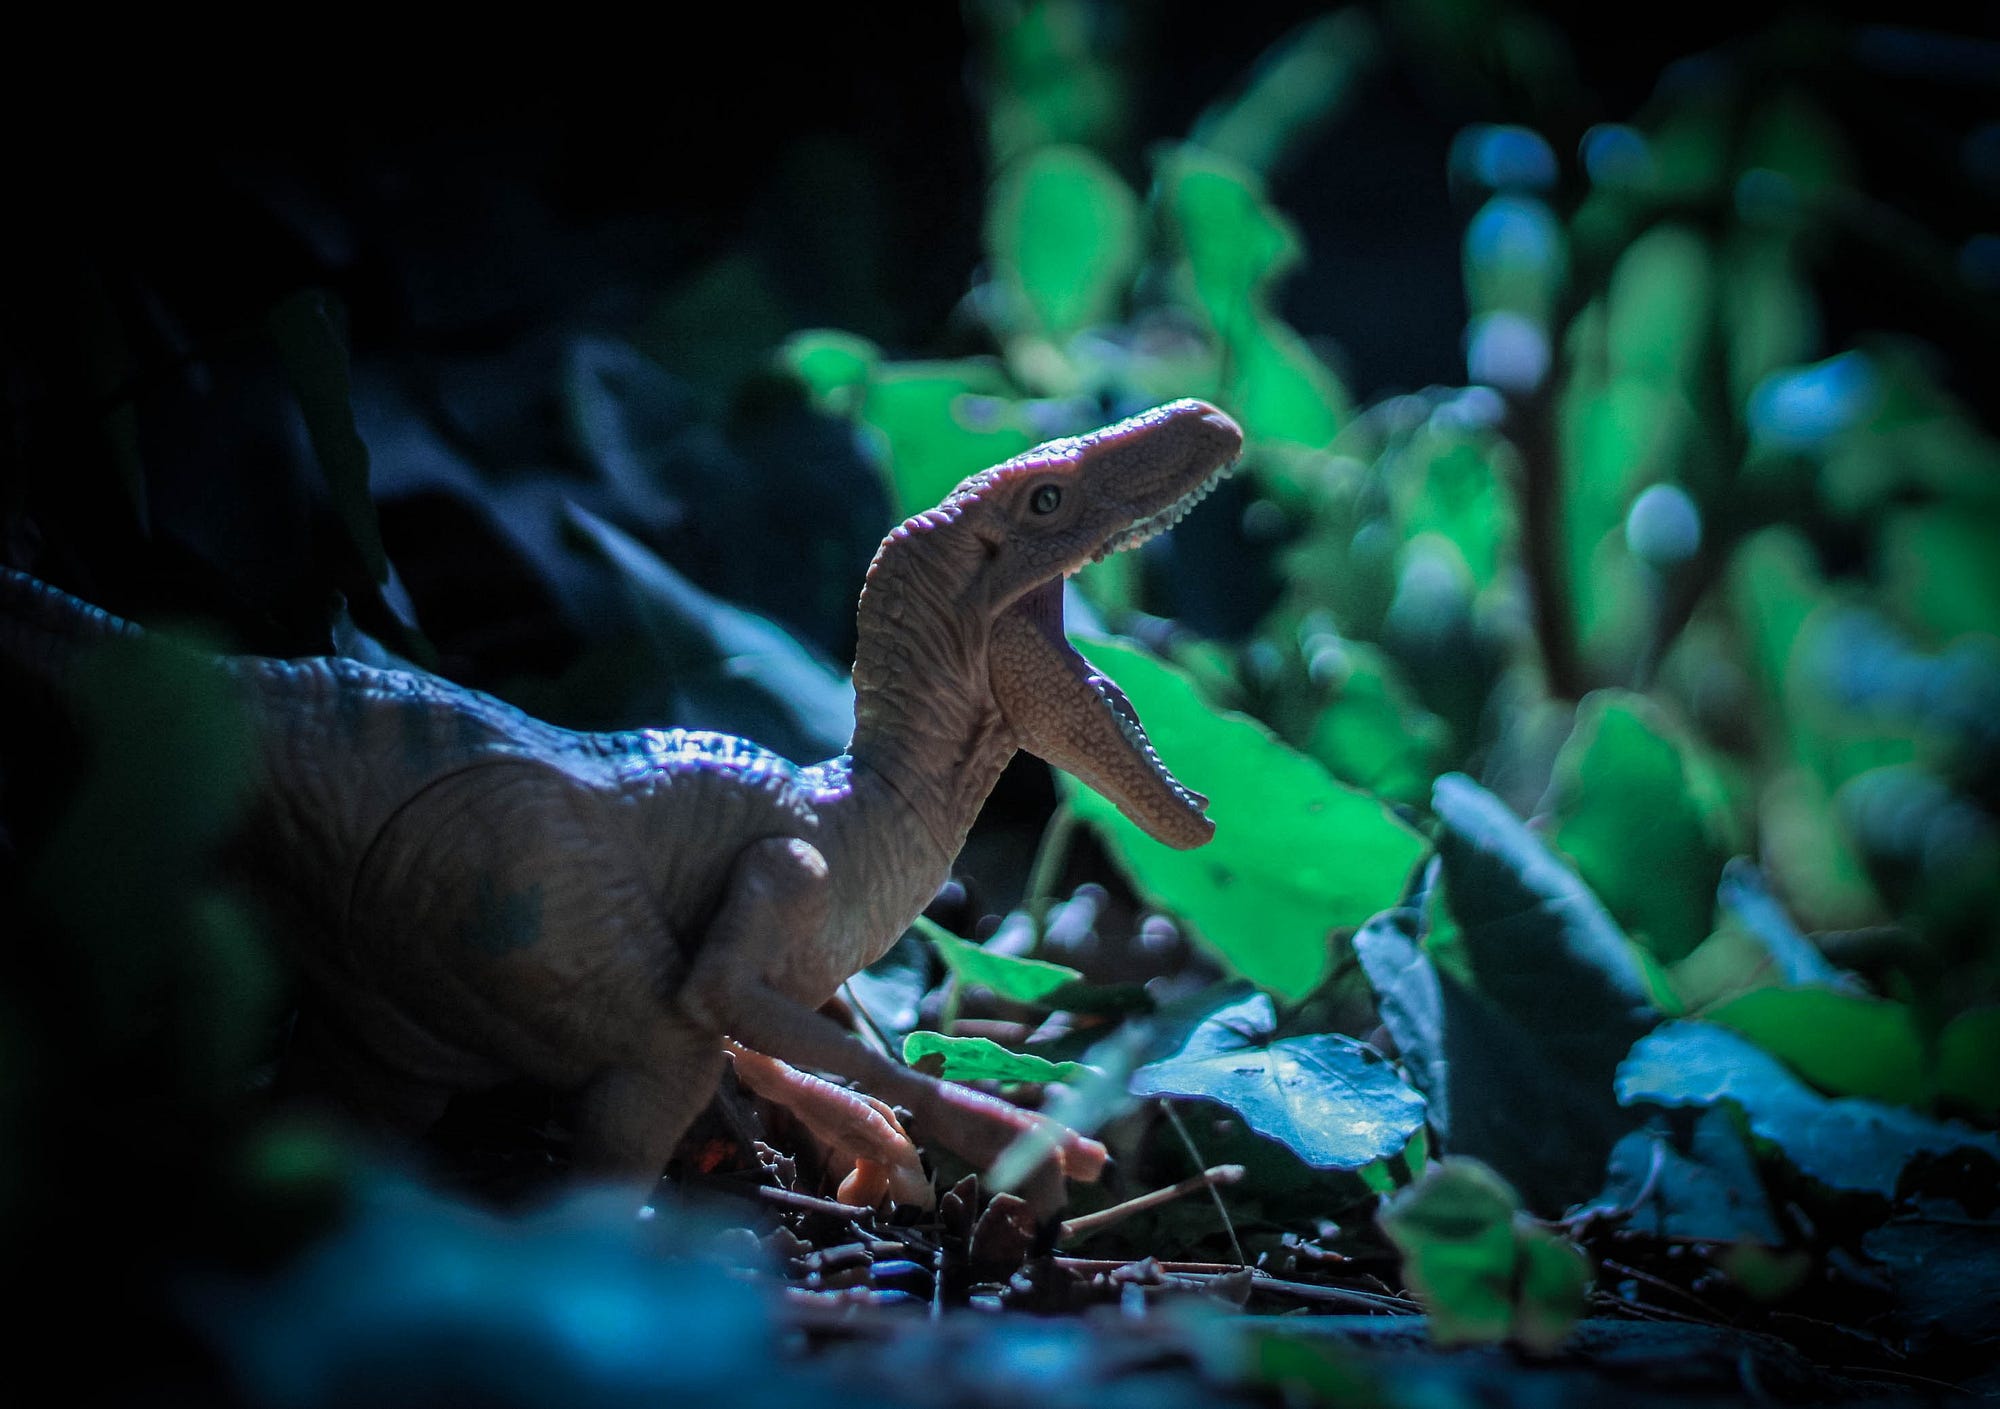 Busca do Google traz dinossauros de Jurassic World em realidade